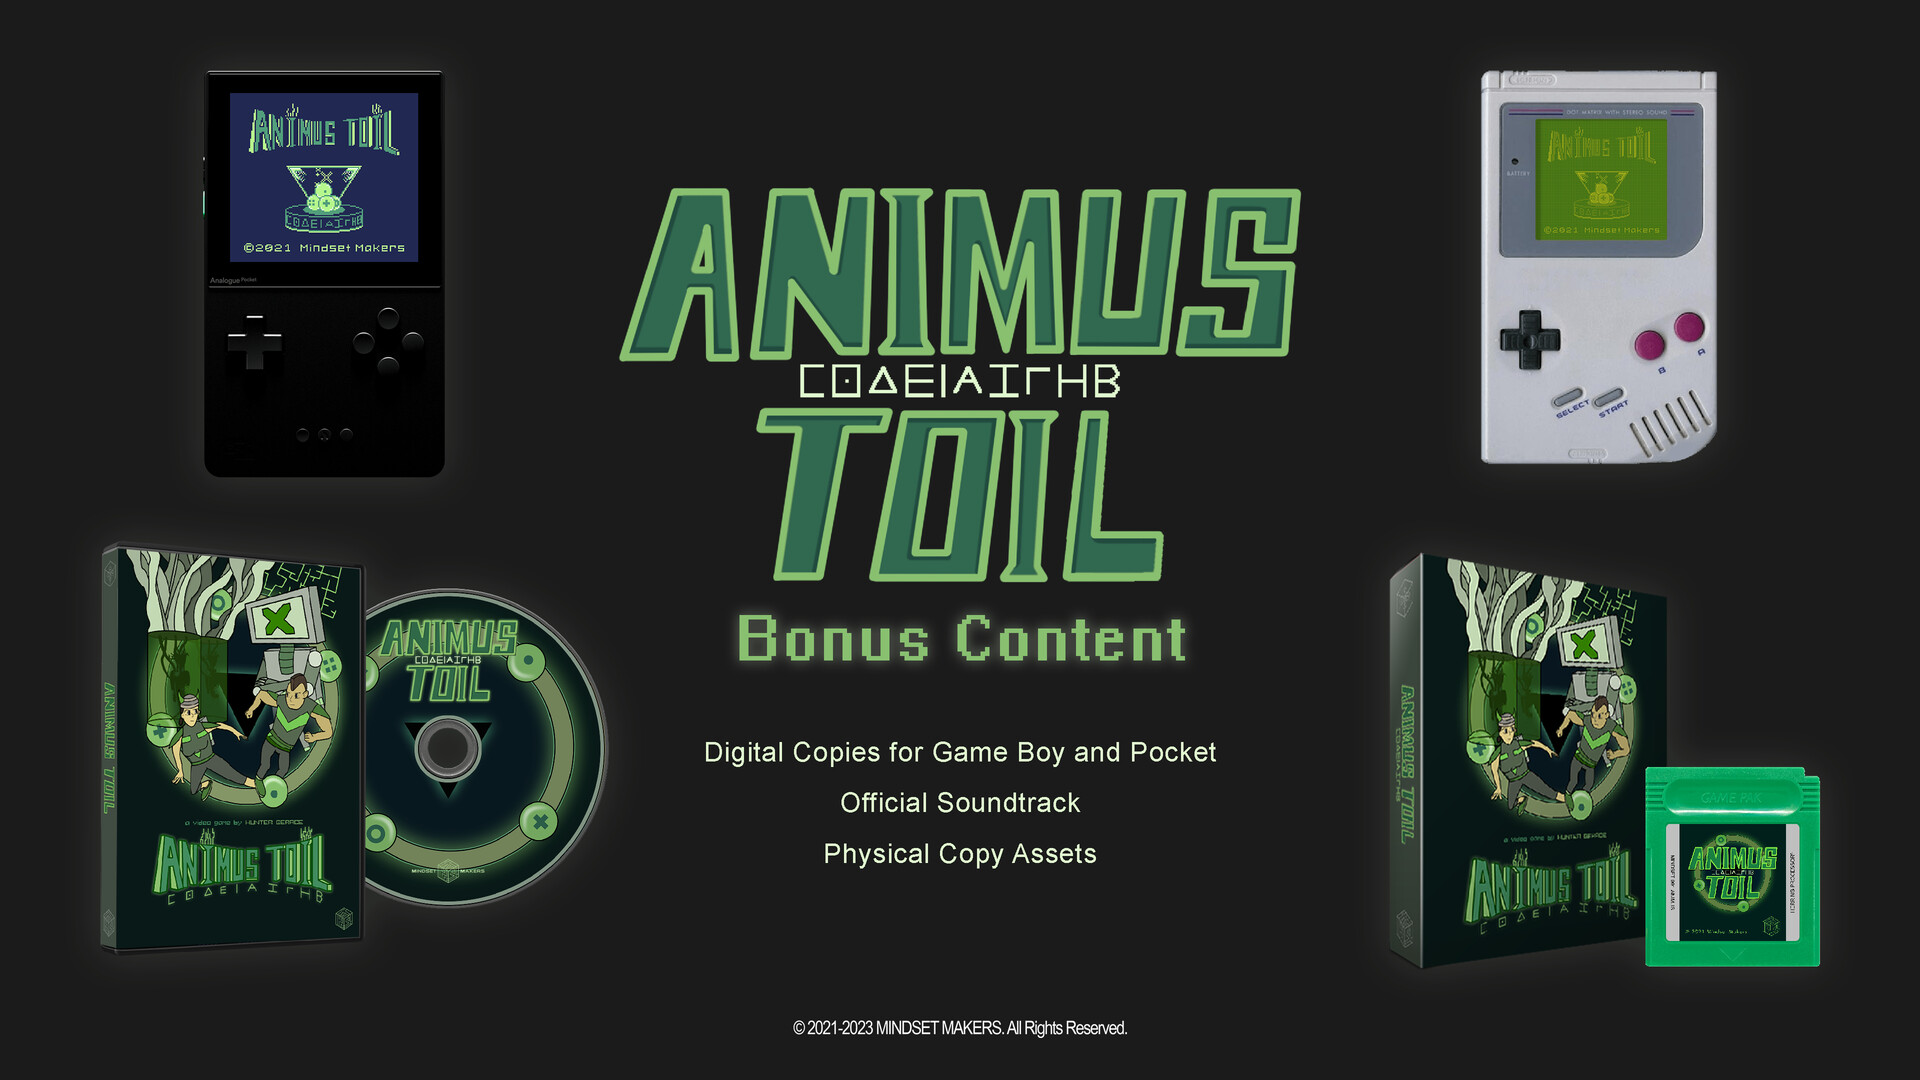 Animus Toil - Bonus Content ($1 Donation) Featured Screenshot #1